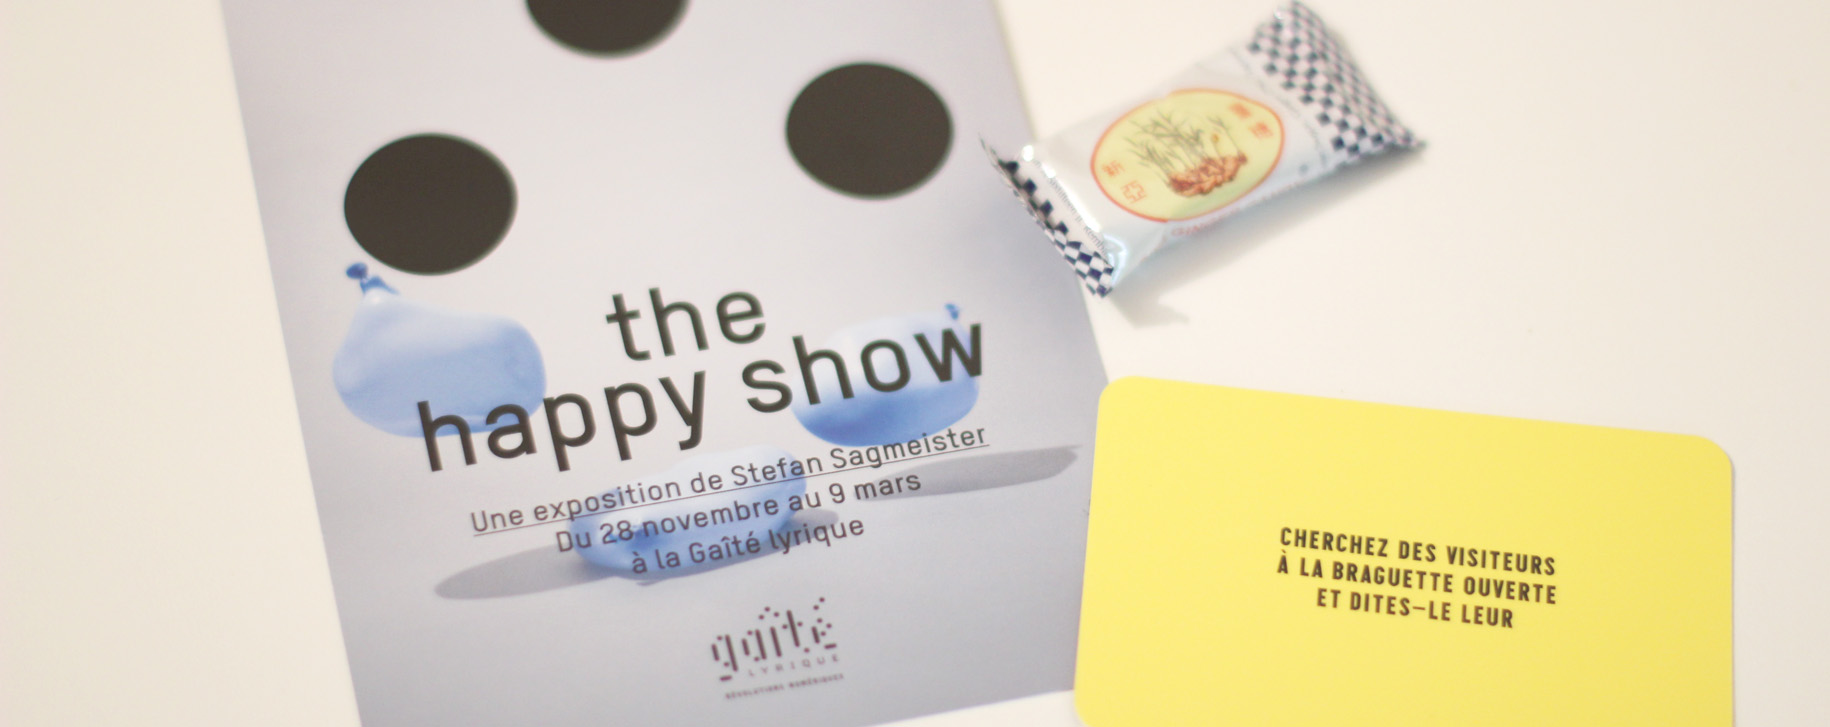 The Happy Show, Gaîté Lyrique